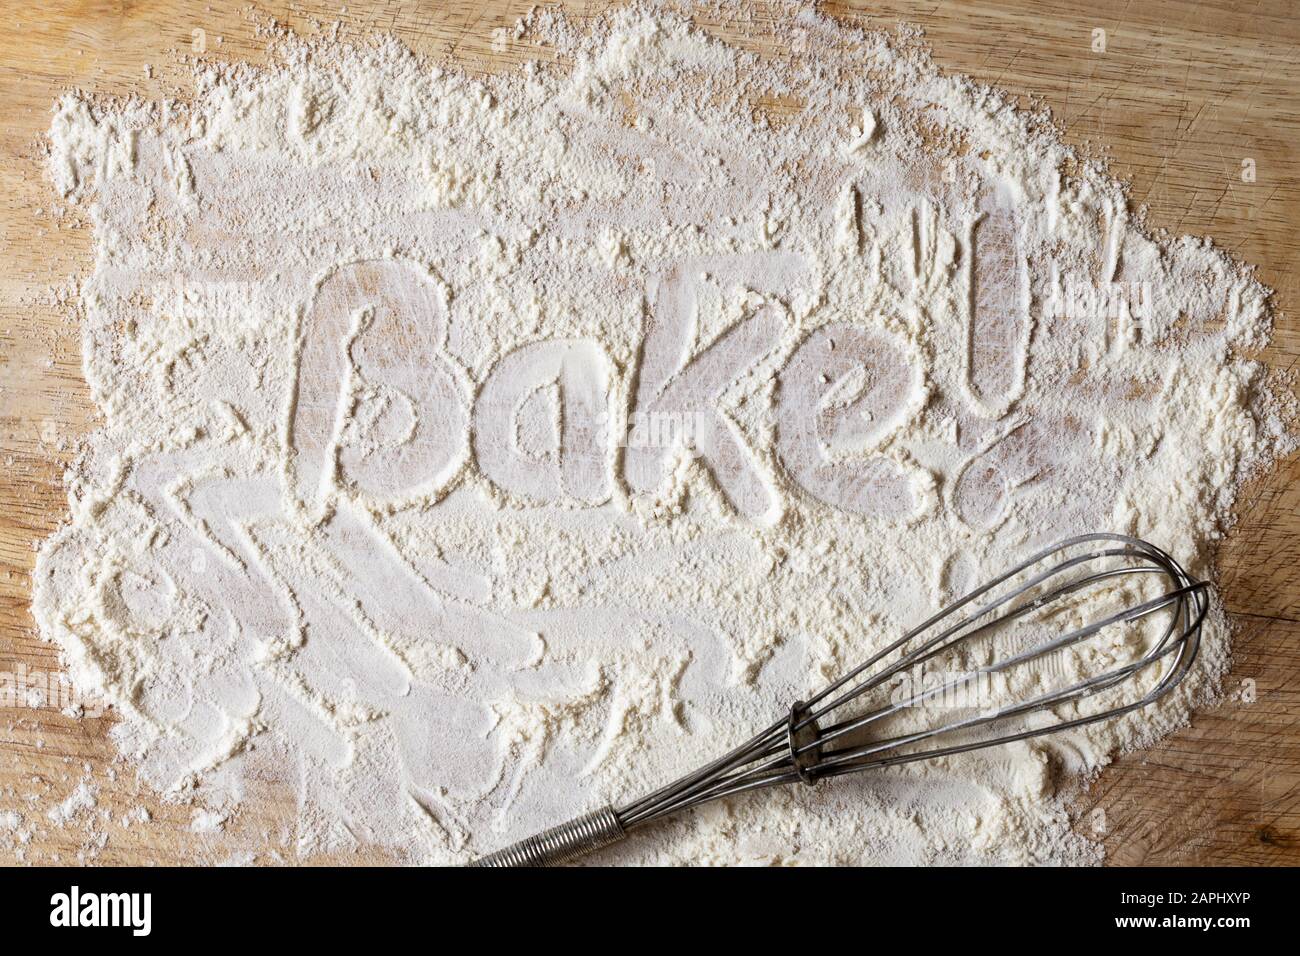 La palabra "Bake!" escrita como una instrucción en harina dispersa a través de la escritura de dedos en la tabla de madera con el levantaclaras manual retro abajo. Foto de stock